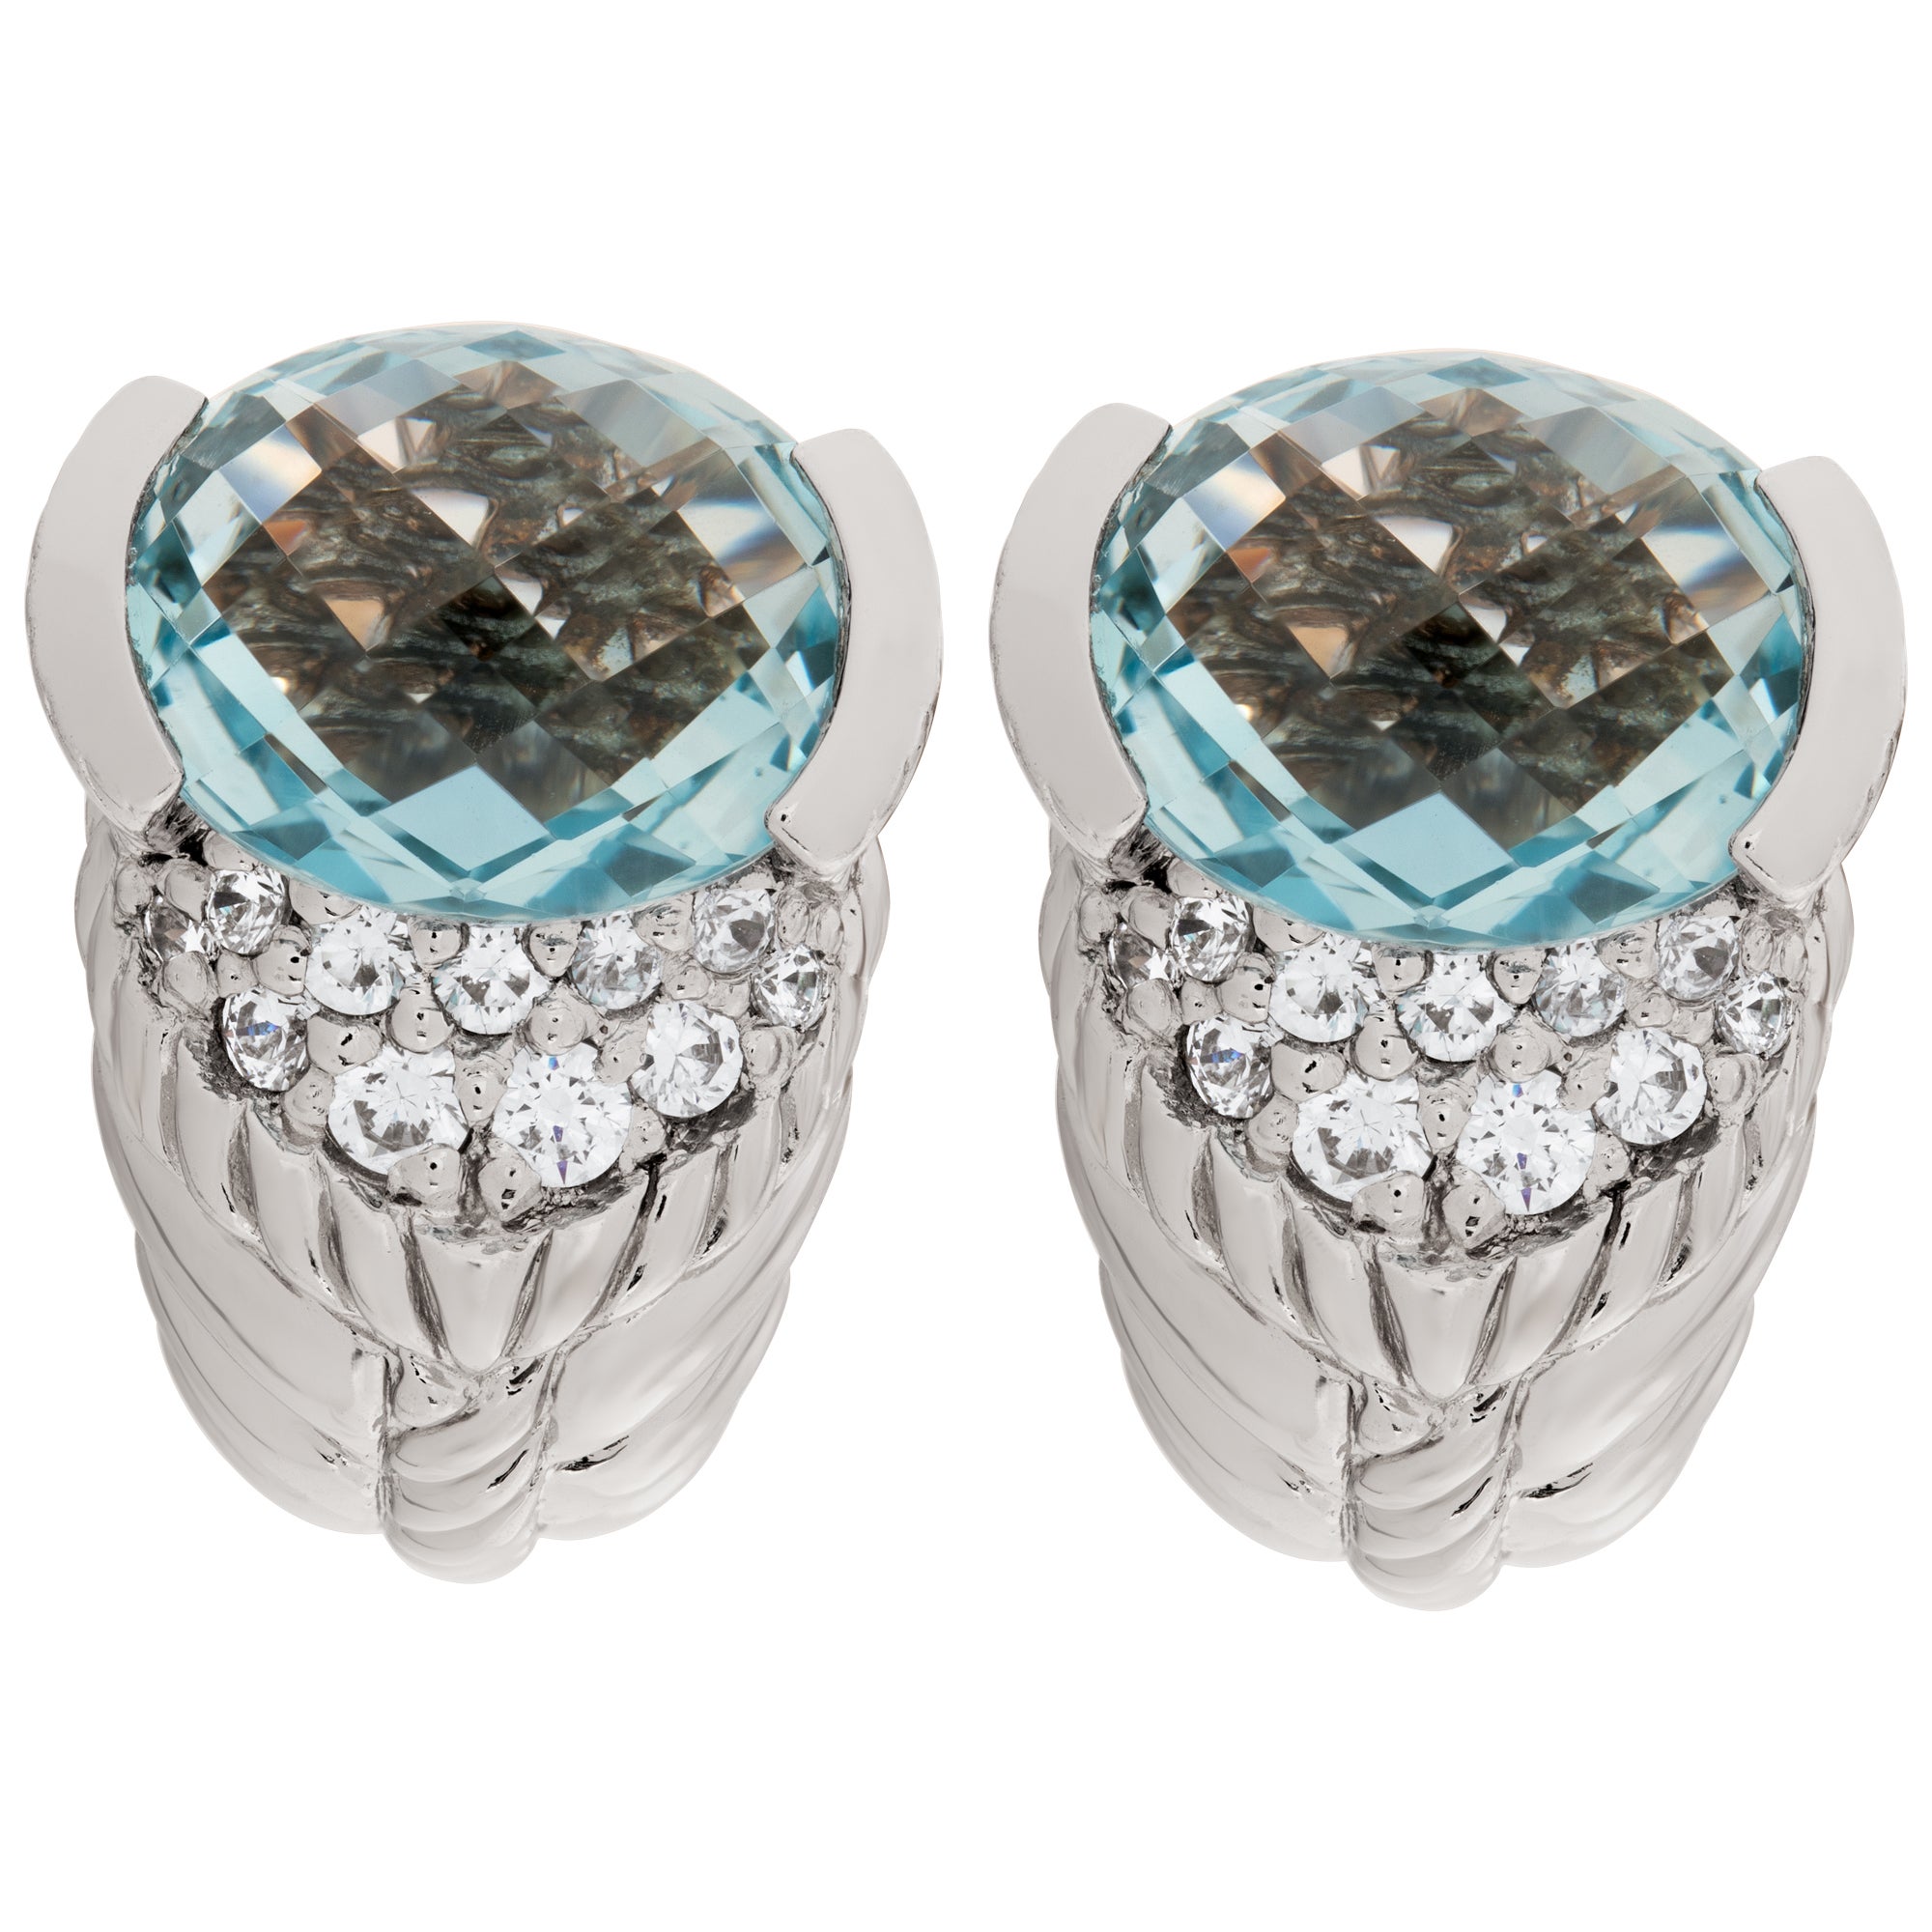 Judith Ripka Earrings in Sterling Silver with Blue Topaz